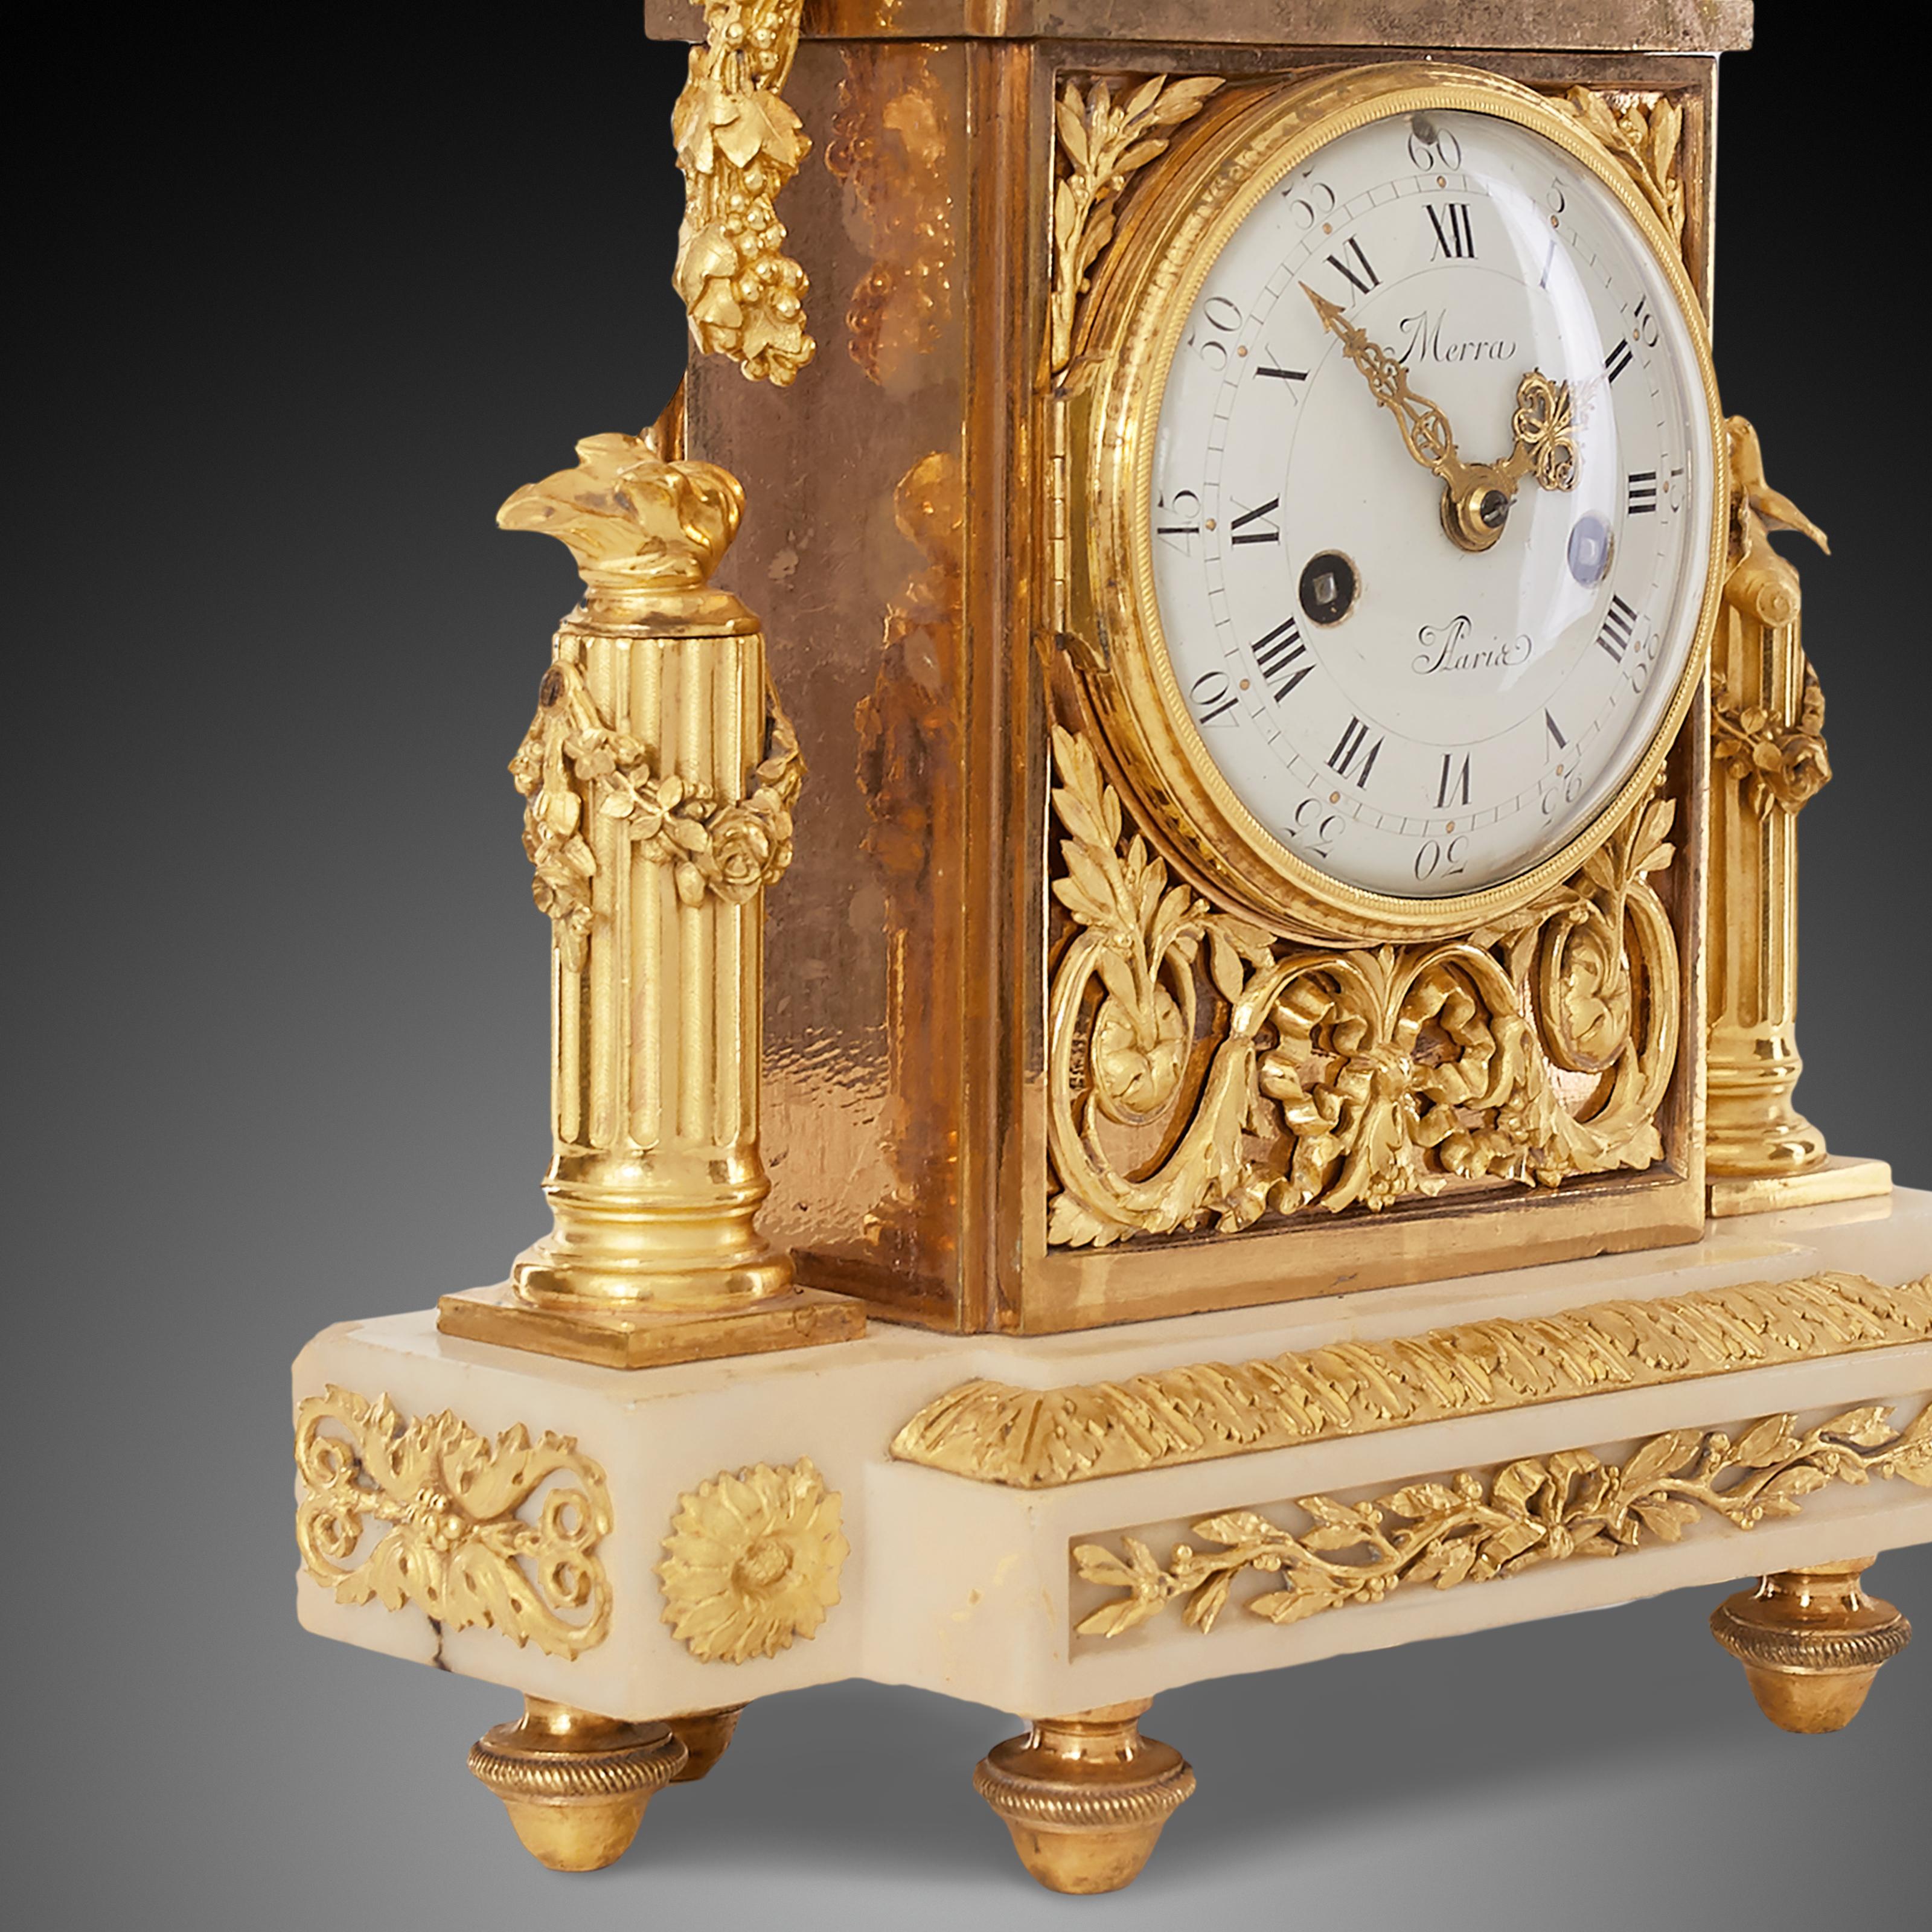 Louis XVI Mantel Clock 18th Century Louis XV Period by Merra À Paris